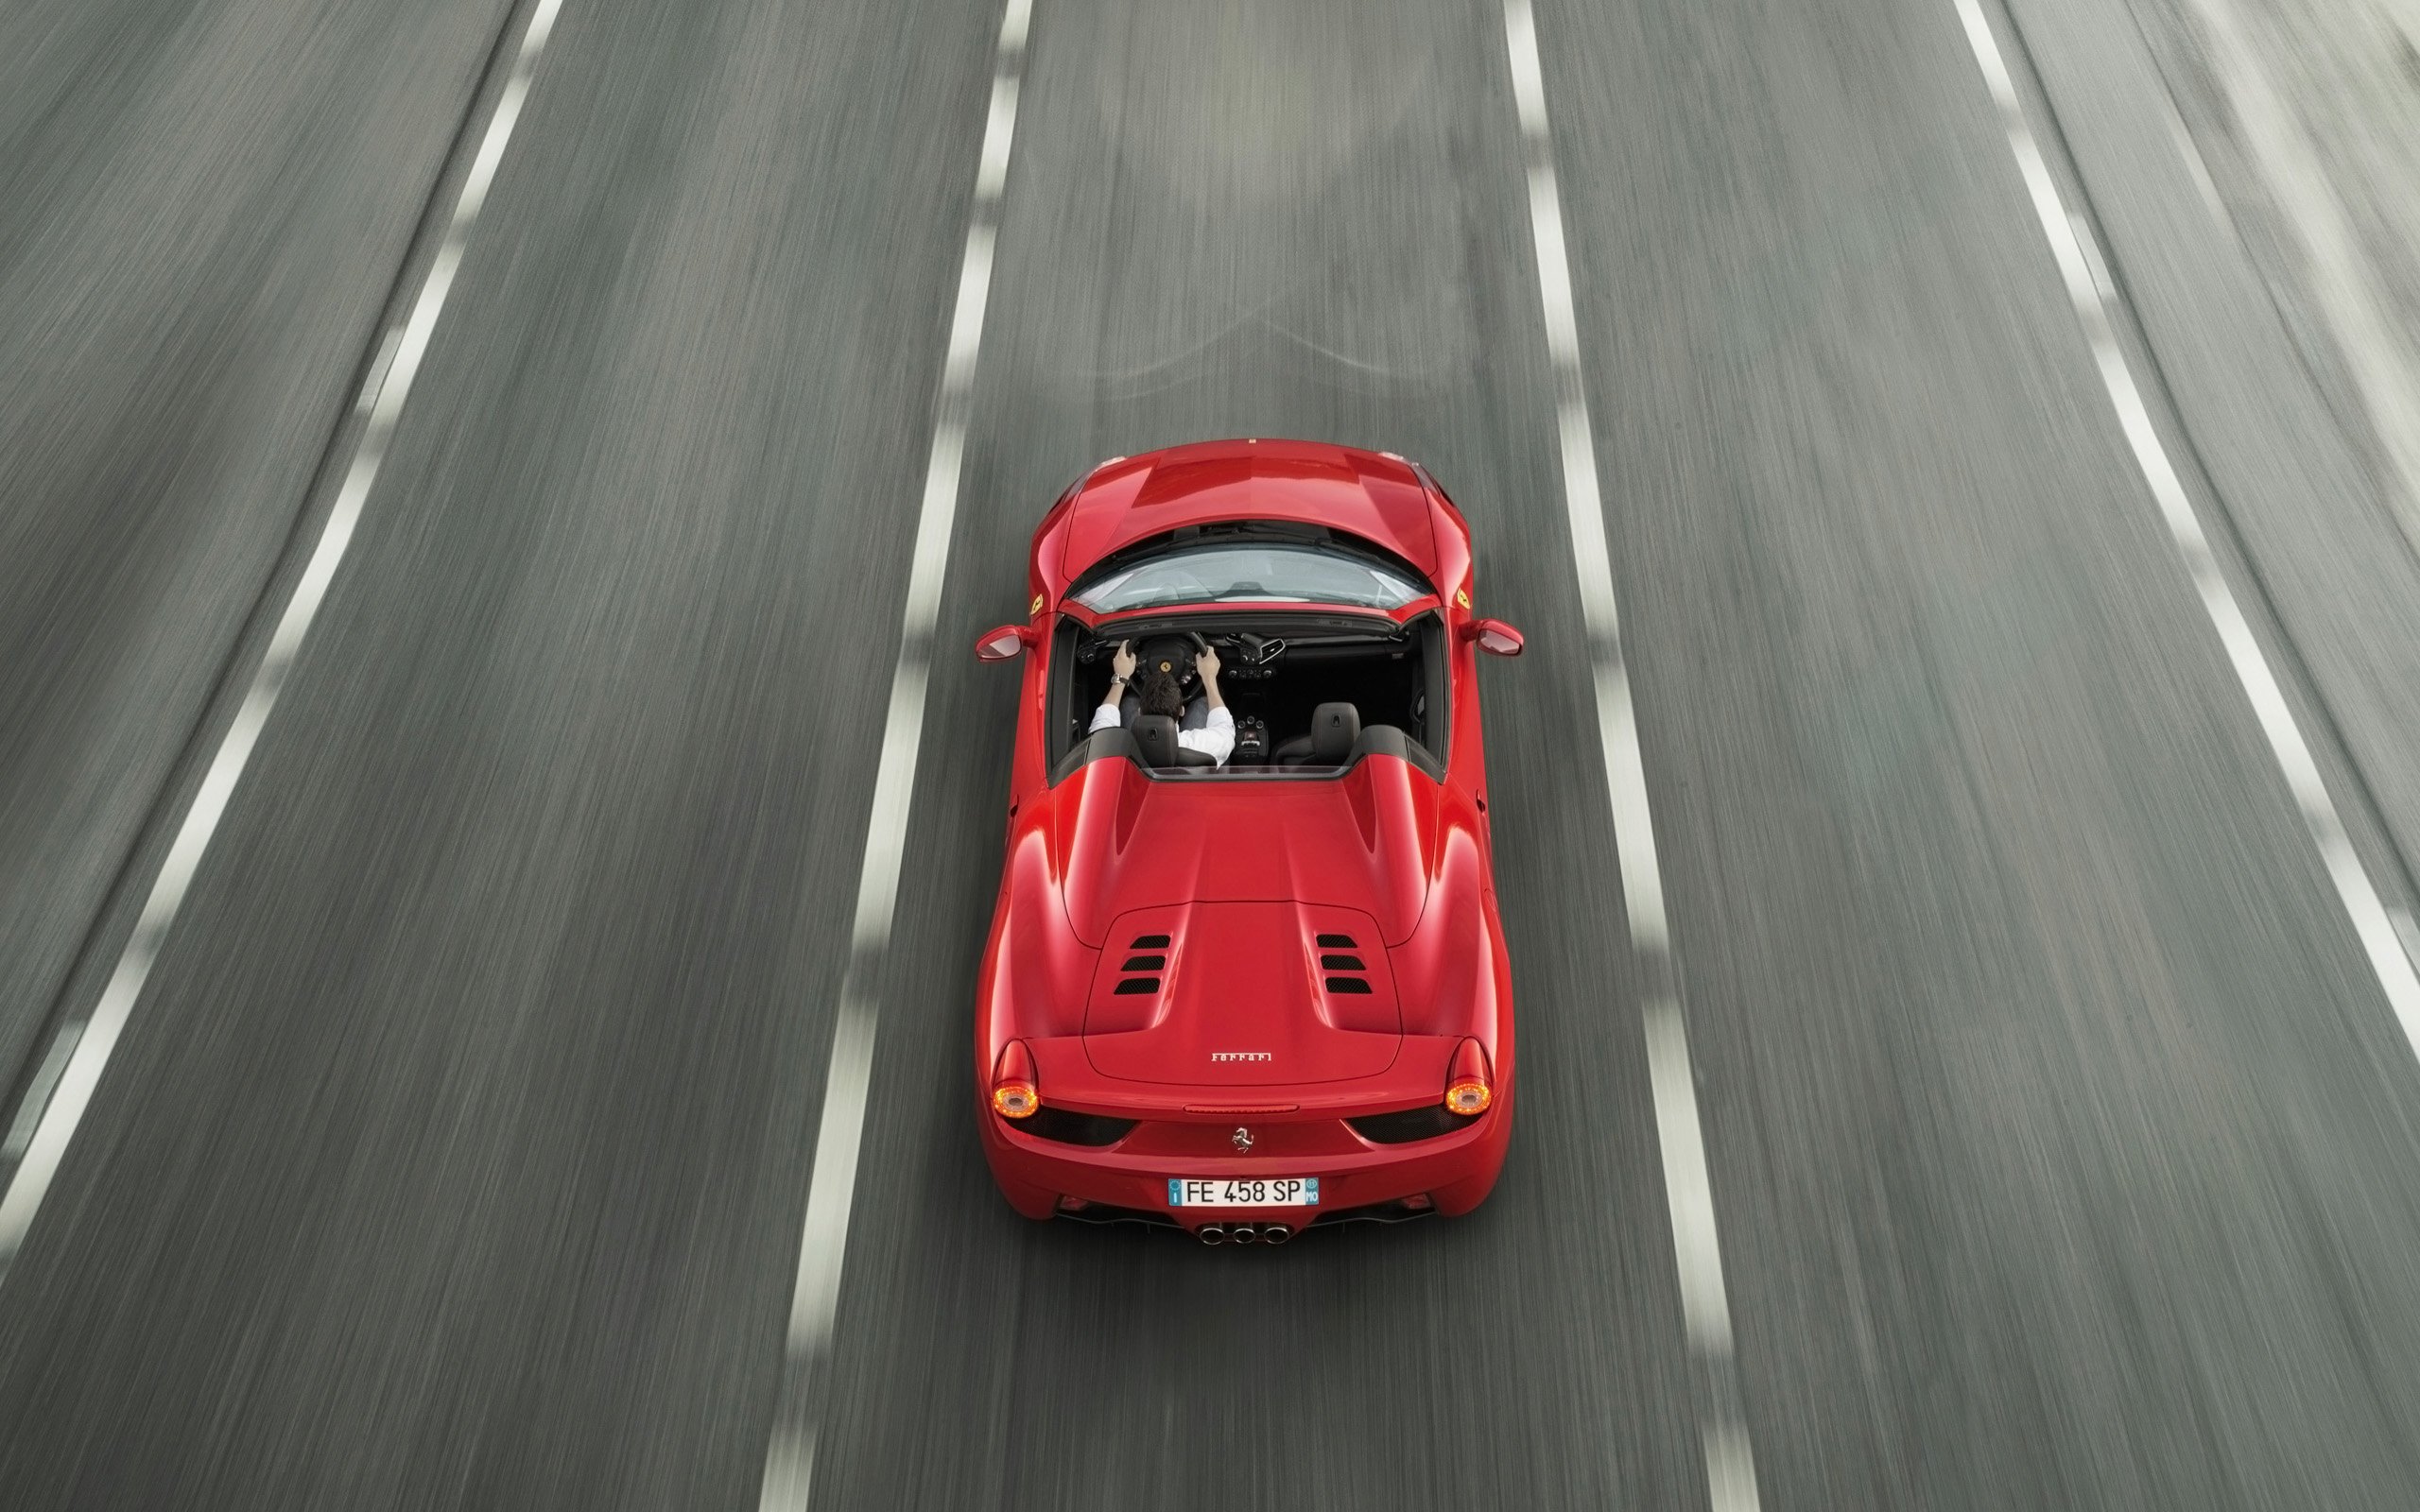 2012, Ferrari, 458, Spider, Supercar Wallpaper